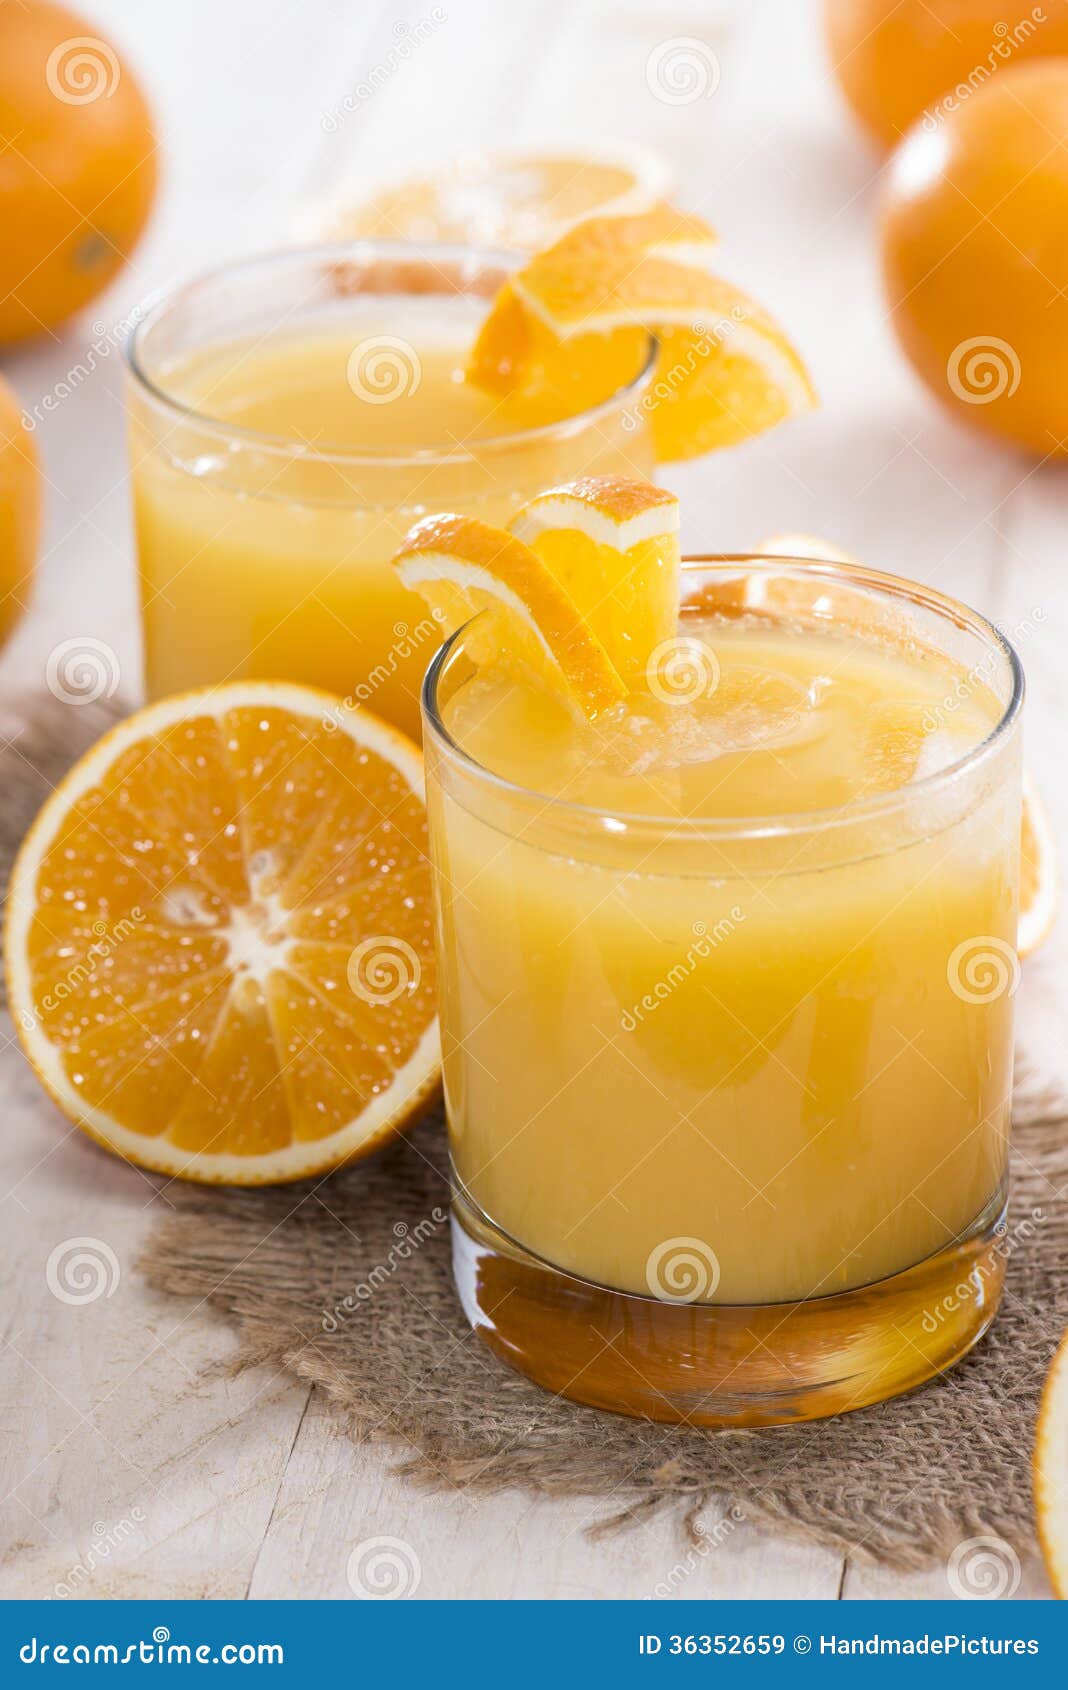 Сок из замороженных апельсинов в домашних условиях. Апельсиновый сок. Апельсиновый напиток. Цитрусовый сок. Апельсины для сока.